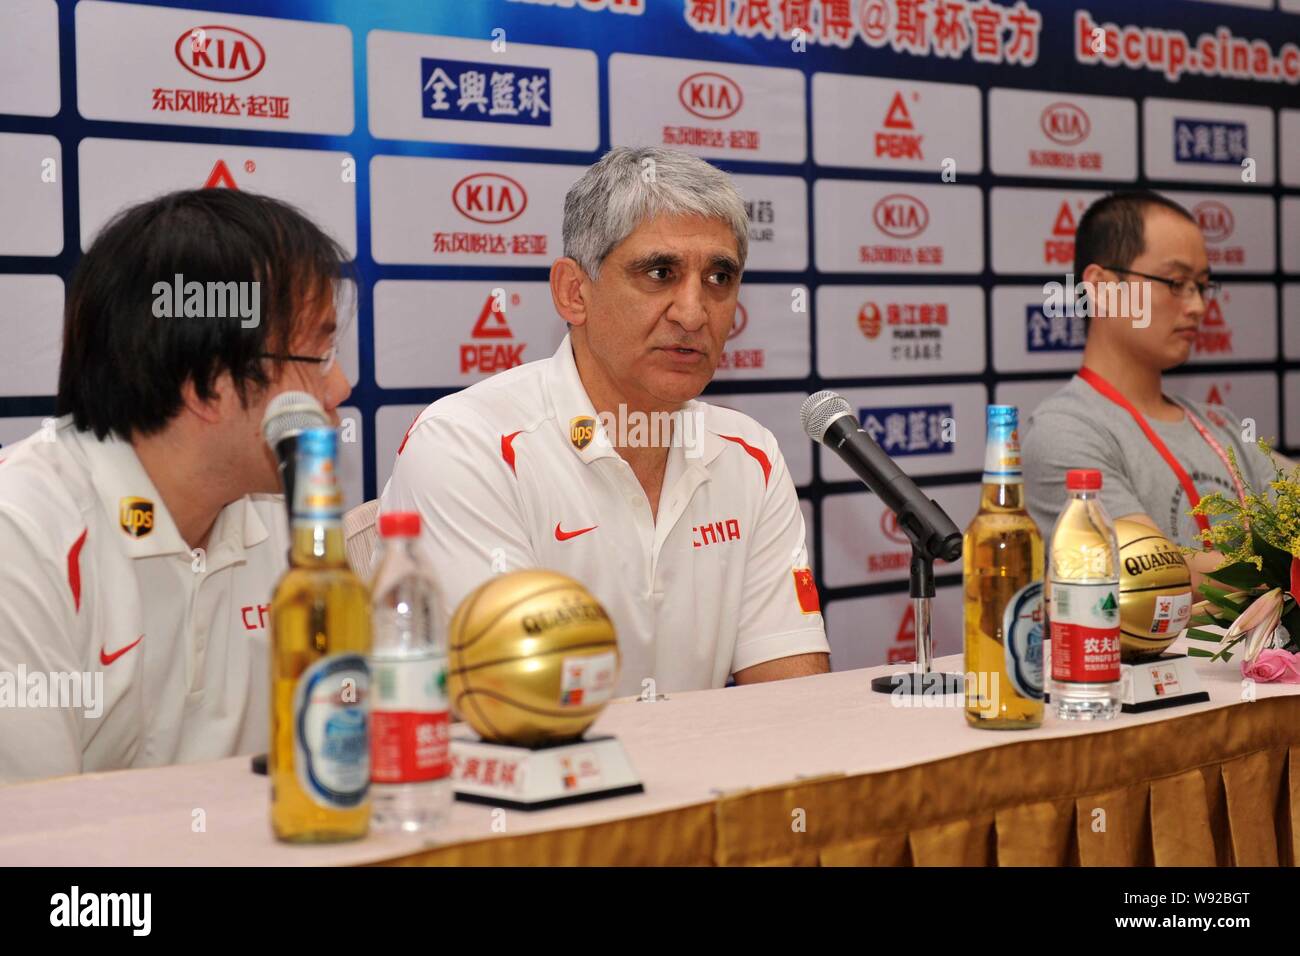 Panagiotis Giannakis, centre, le nouvel entraîneur-chef de l'équipe de basket-ball de Mens de Chine, assiste à une conférence de presse pour la Coupe Continentale 2013 Stankovic Banque D'Images